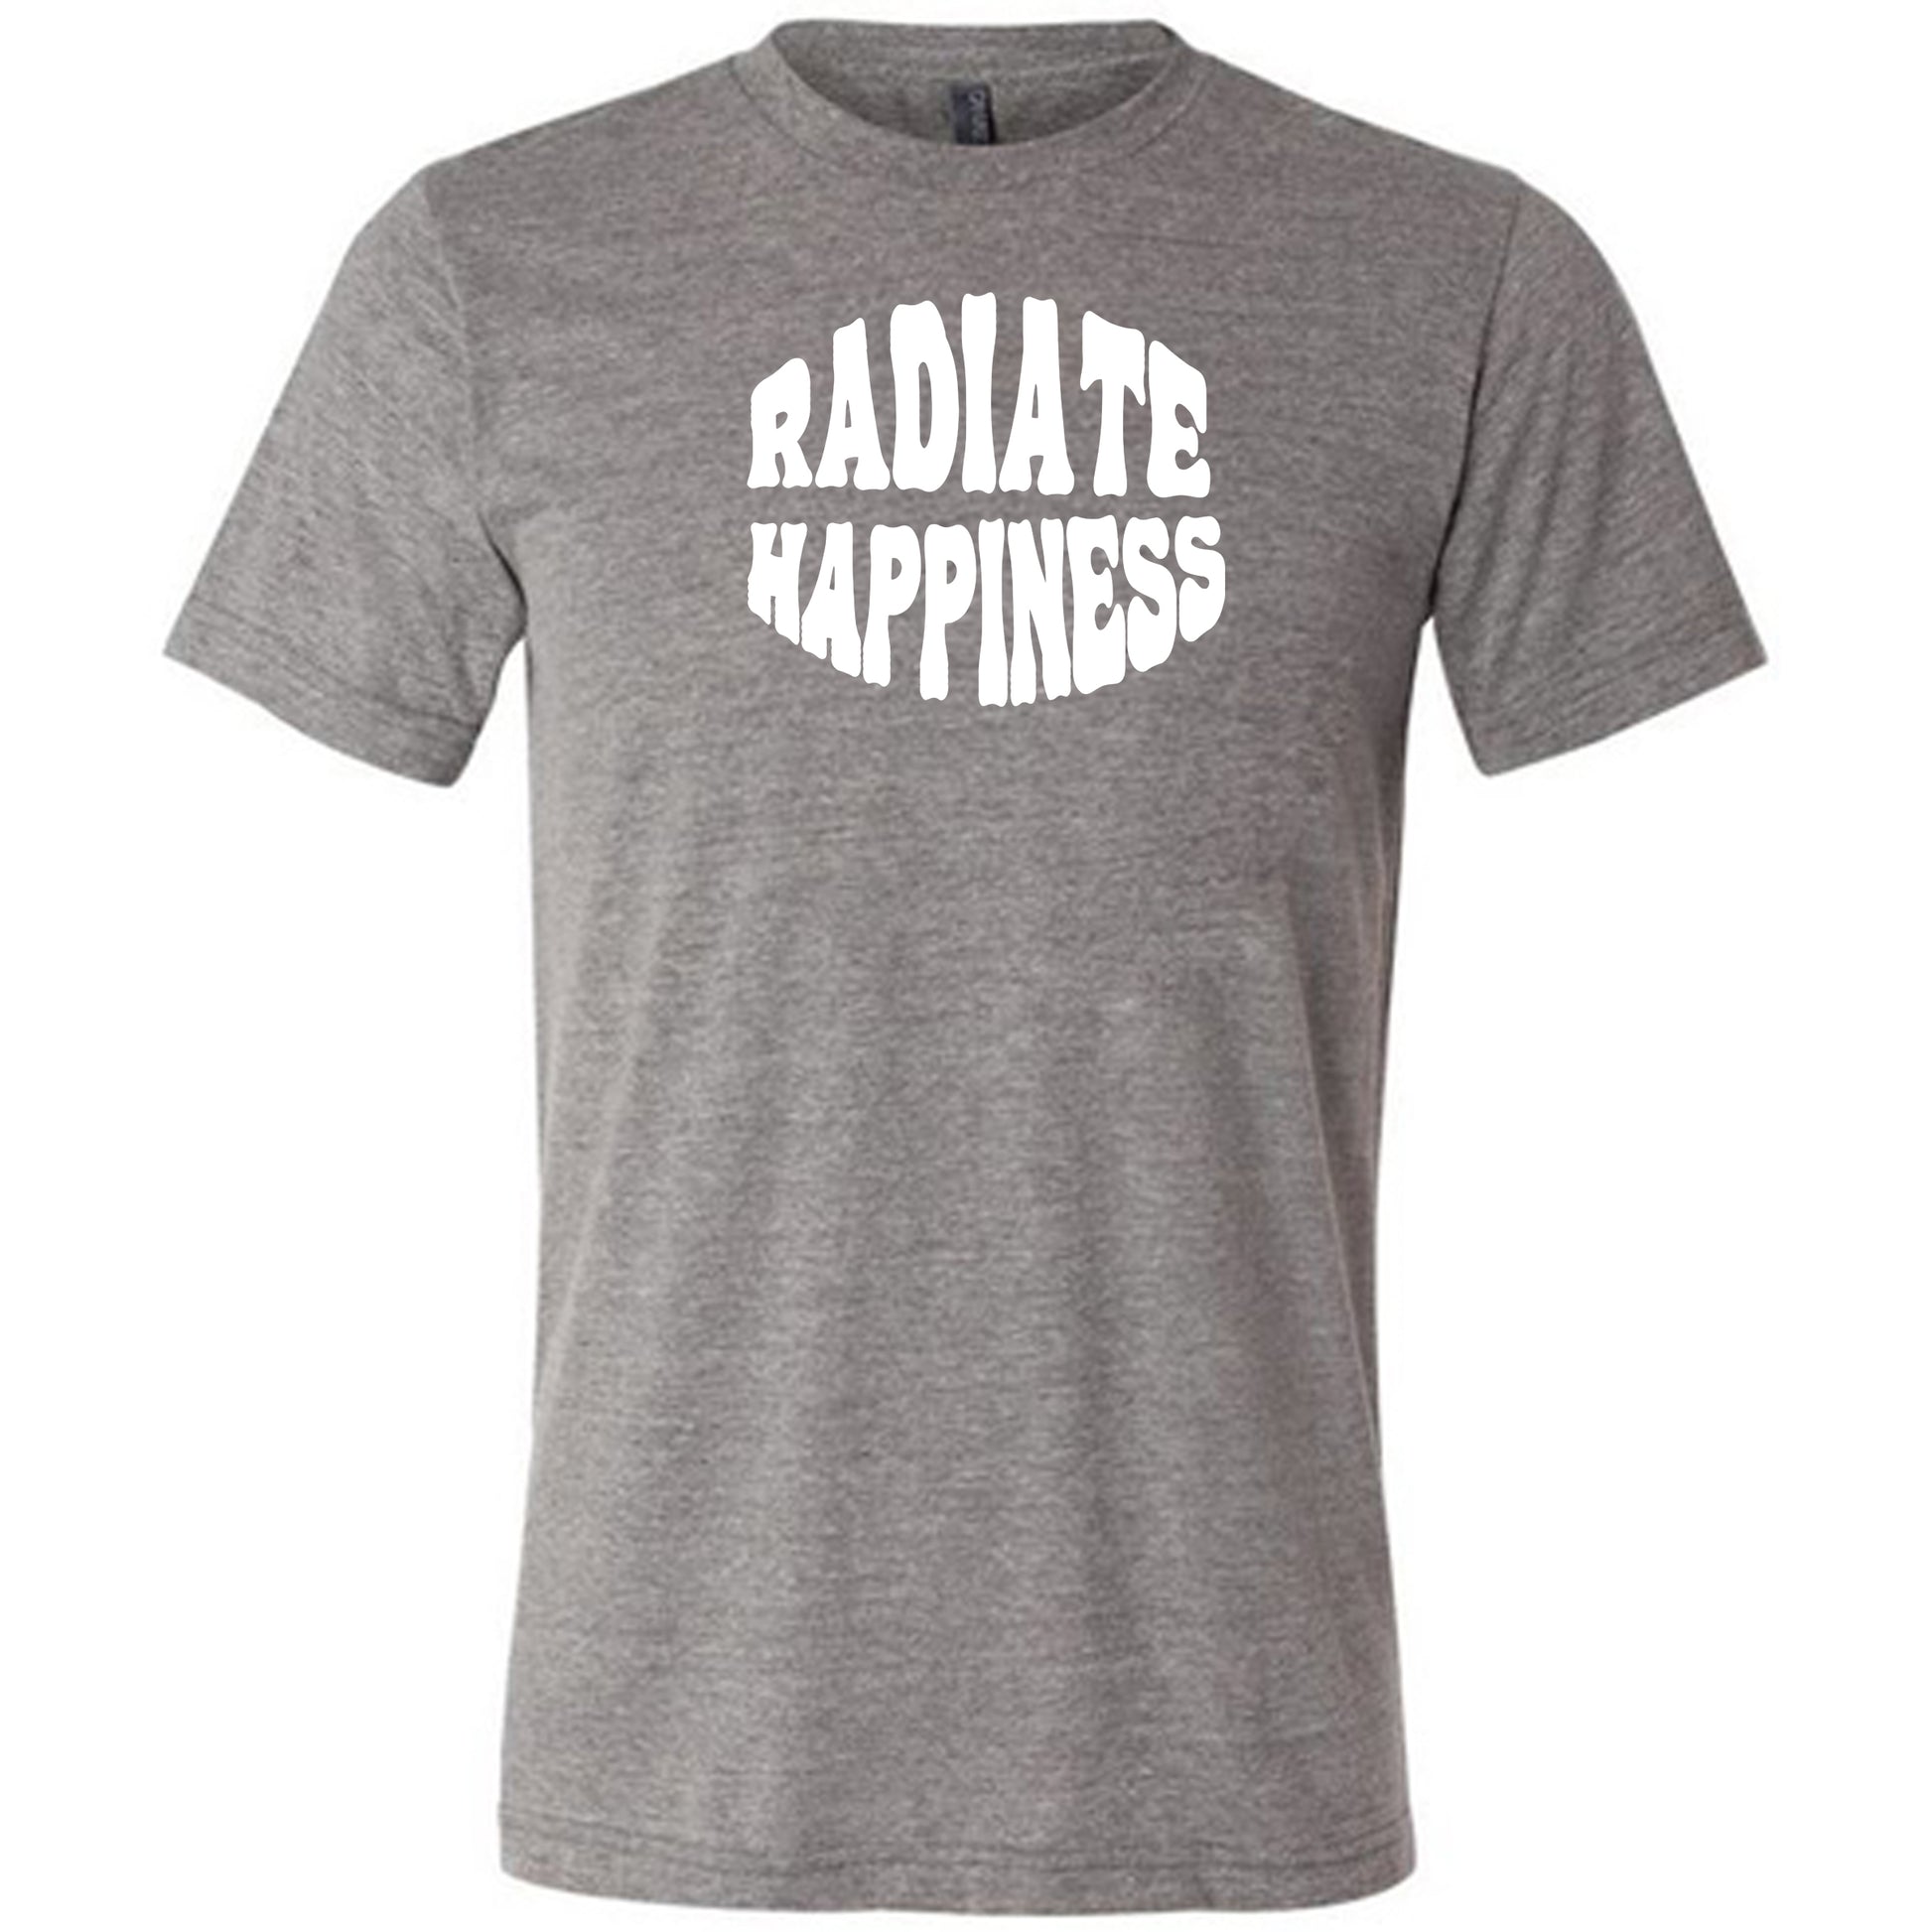 radiate happiness grey shirt